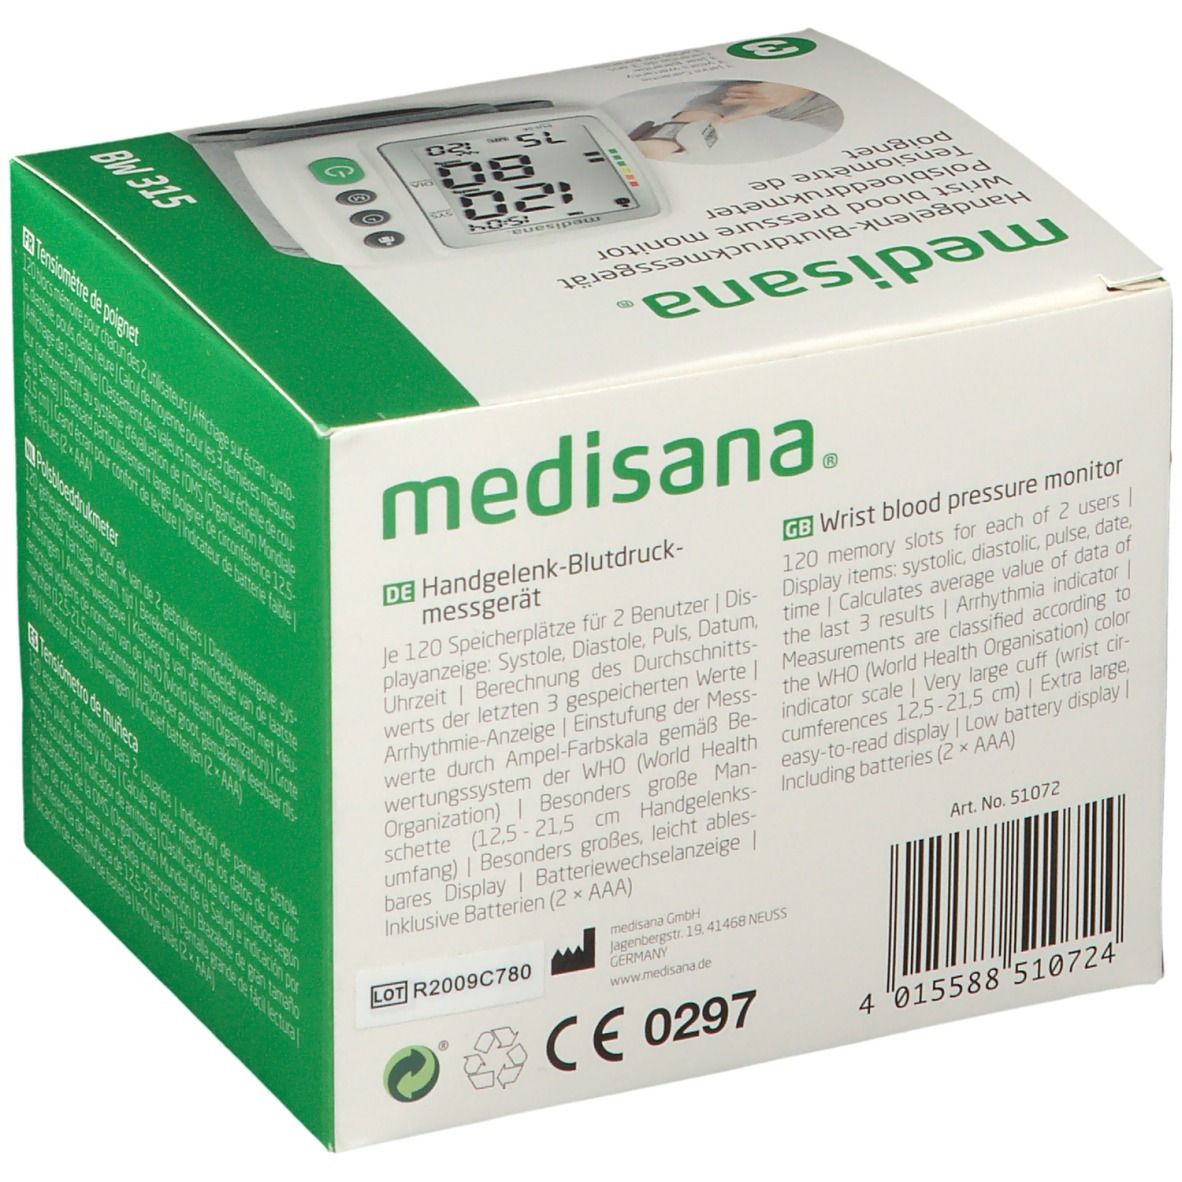 Medisana Handgelenk-Blutdruckmessgerät BW 315 1 St